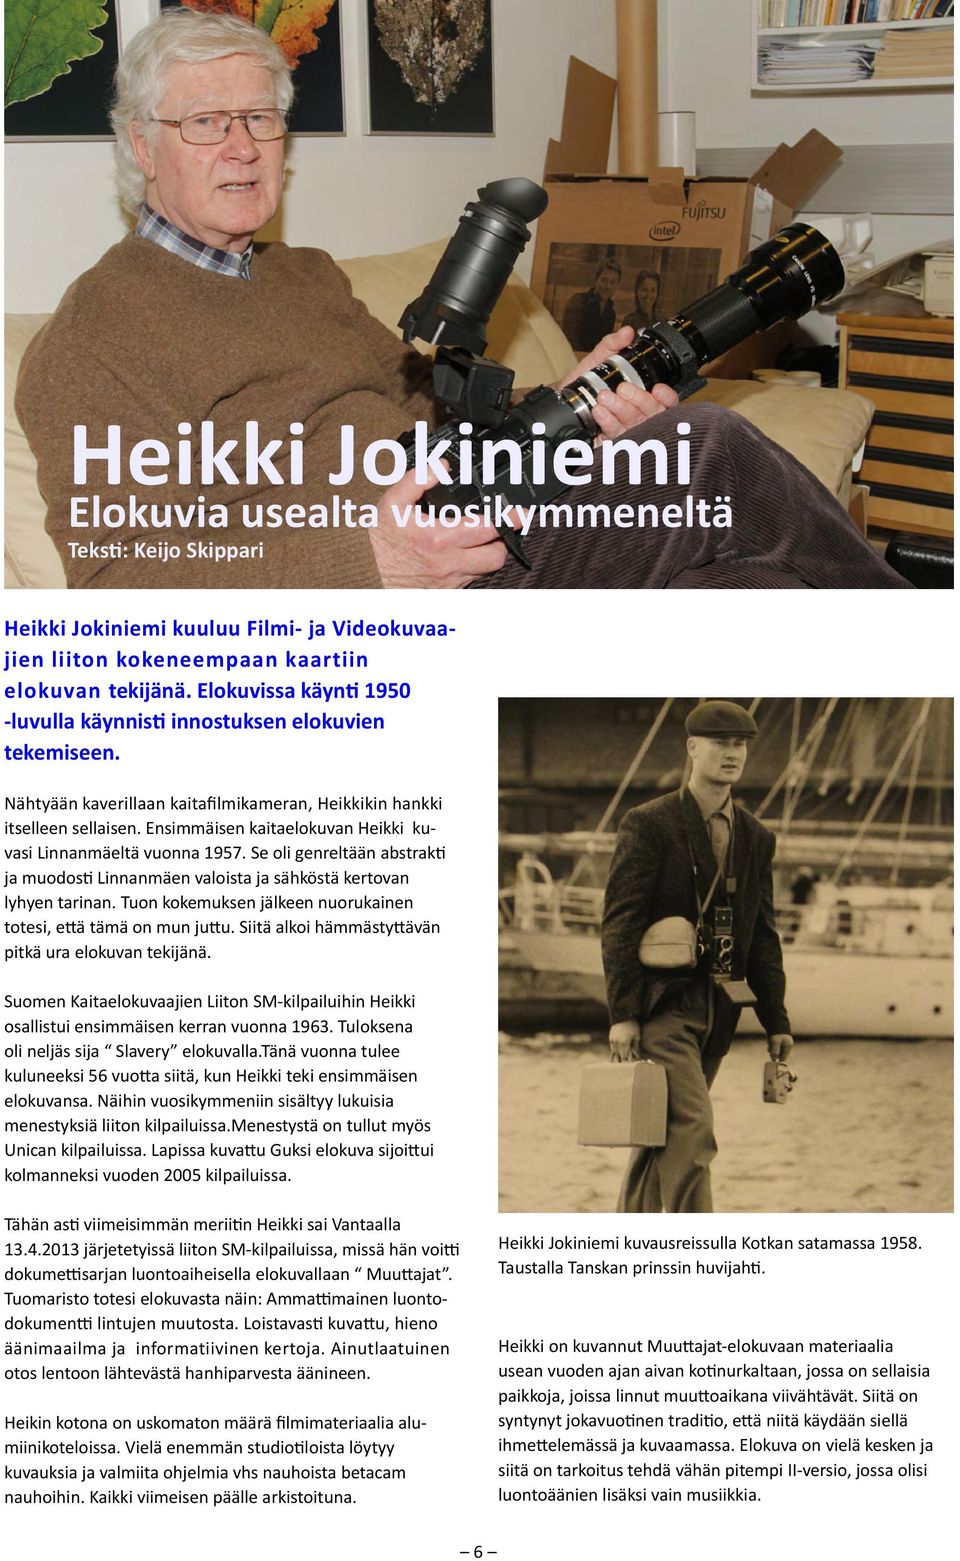 Ensimmäisen kaitaelokuvan Heikki kuvasi Linnanmäeltä vuonna 1957. Se oli genreltään abstrakti ja muodosti Linnanmäen valoista ja sähköstä kertovan lyhyen tarinan.